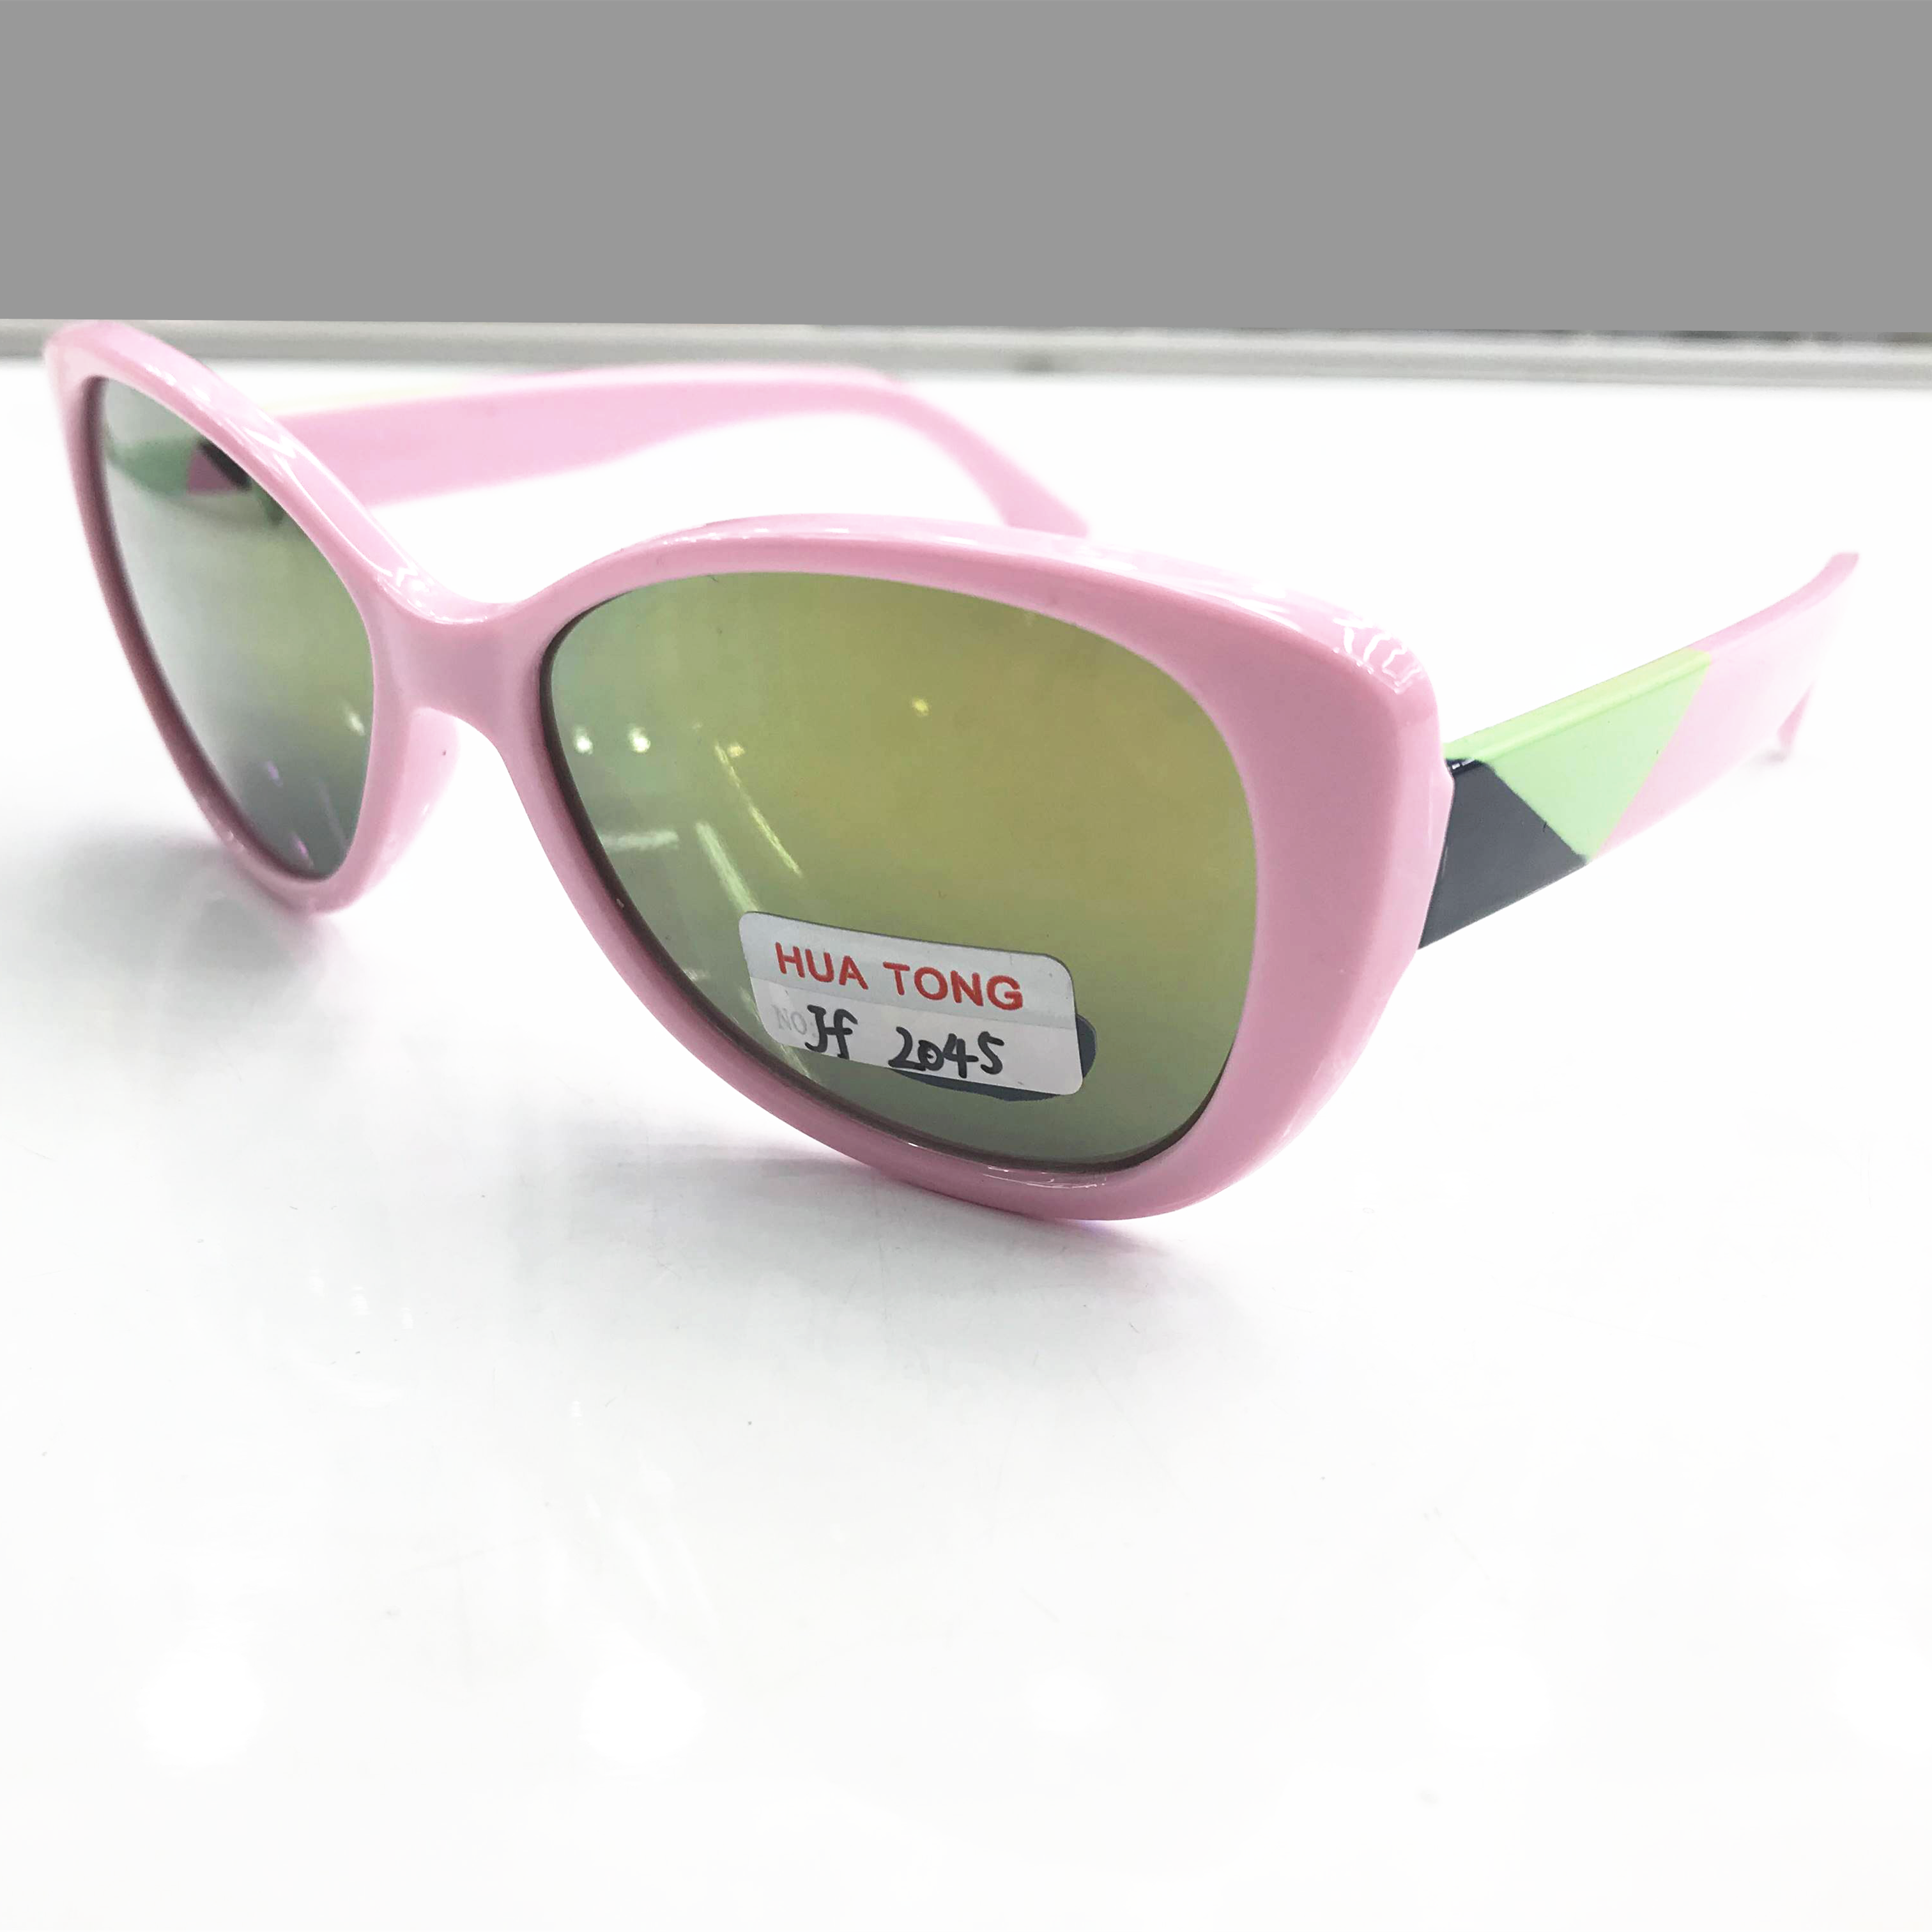 2020最新款儿童时尚太阳镜防紫外线眼镜UV400镀膜1904产品图